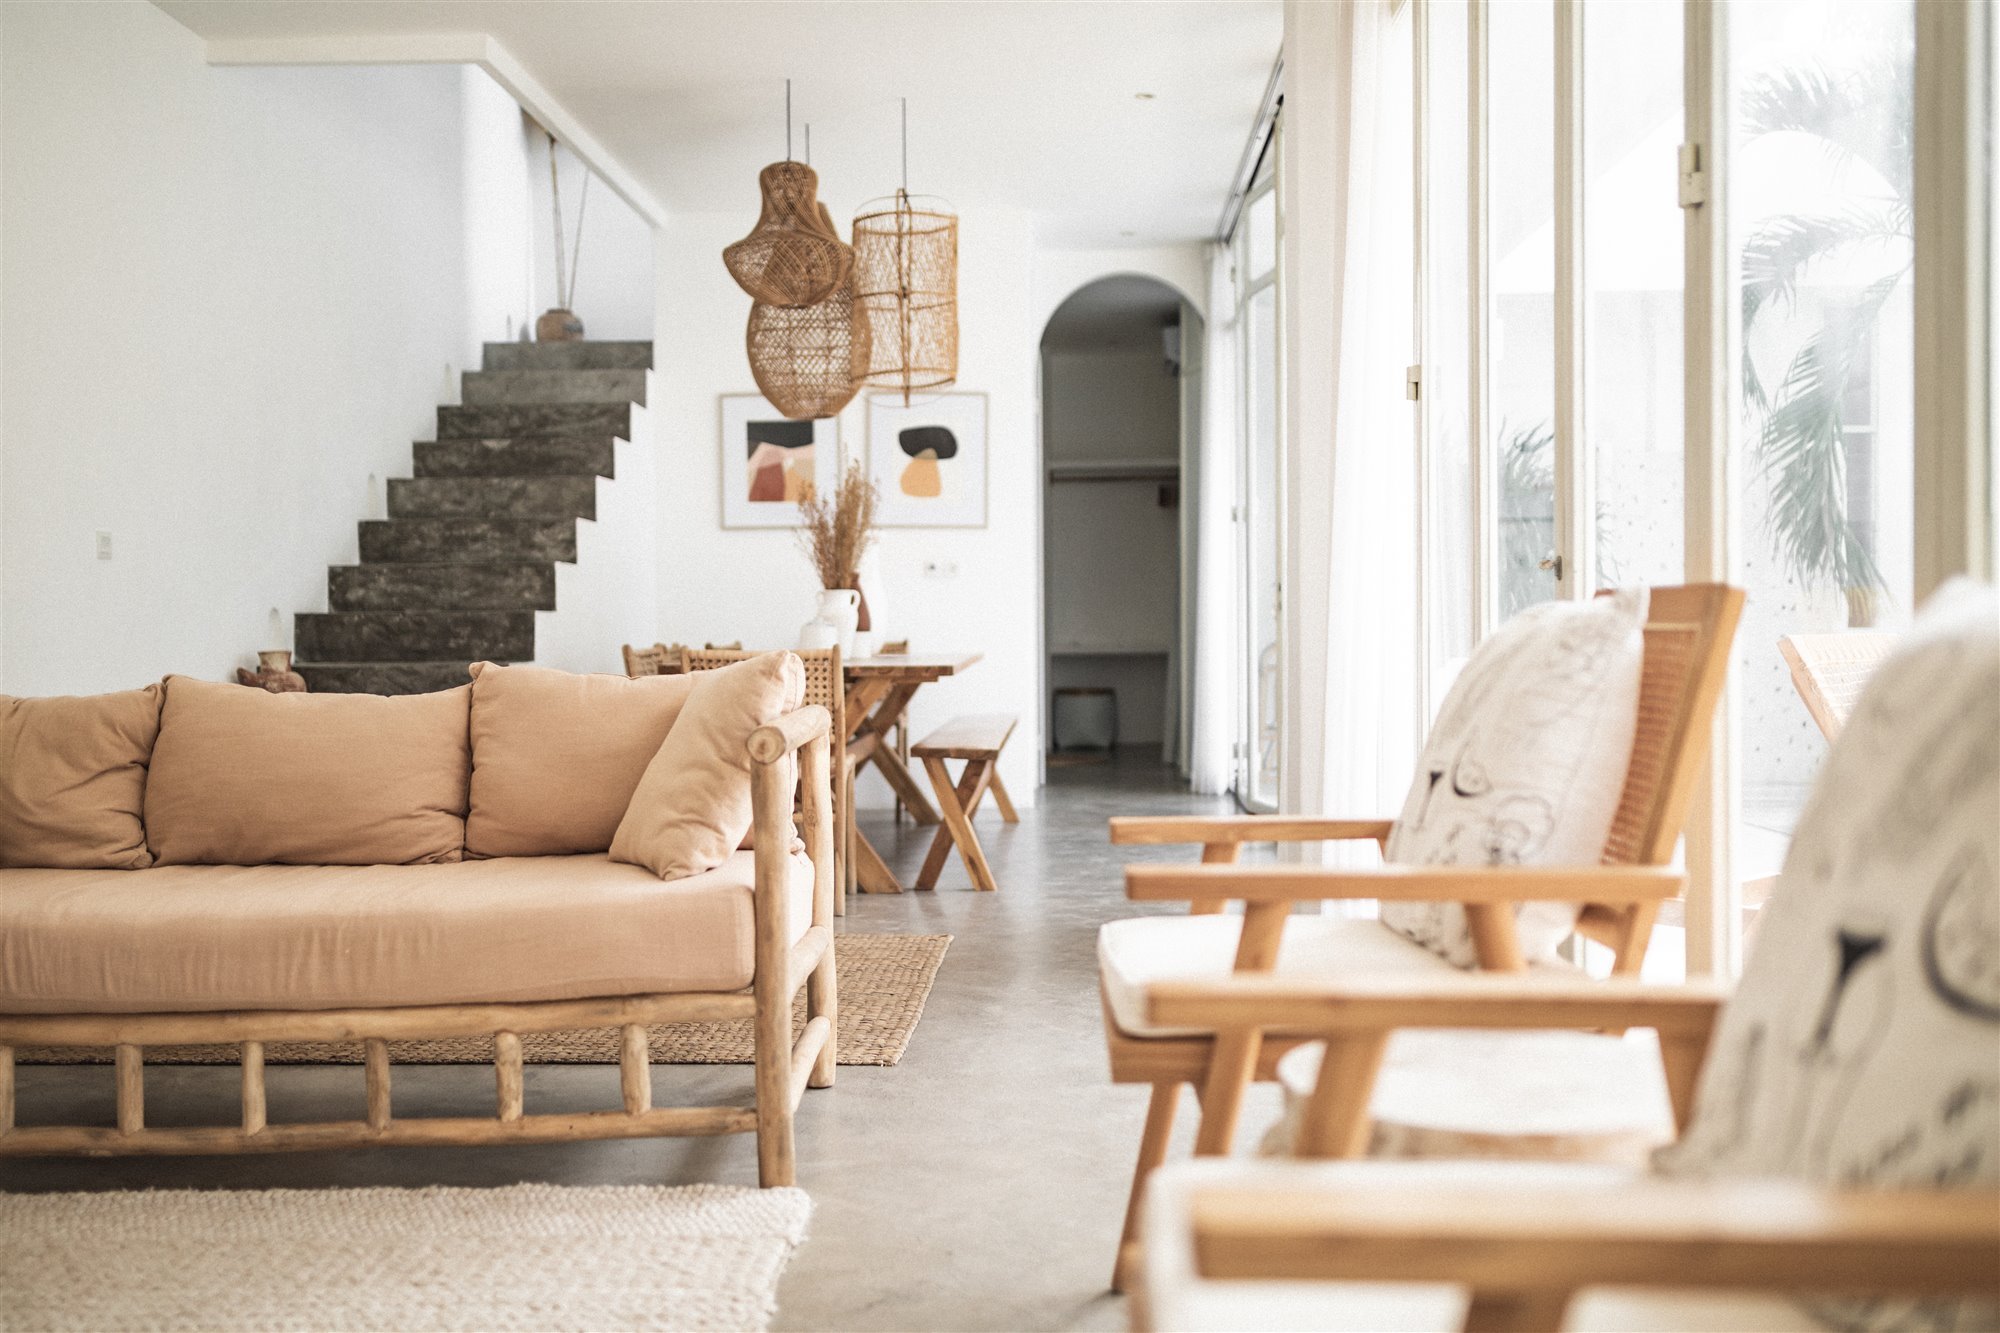 Casa de inspiracion mediterranea en Bali salon con muebles tropicales